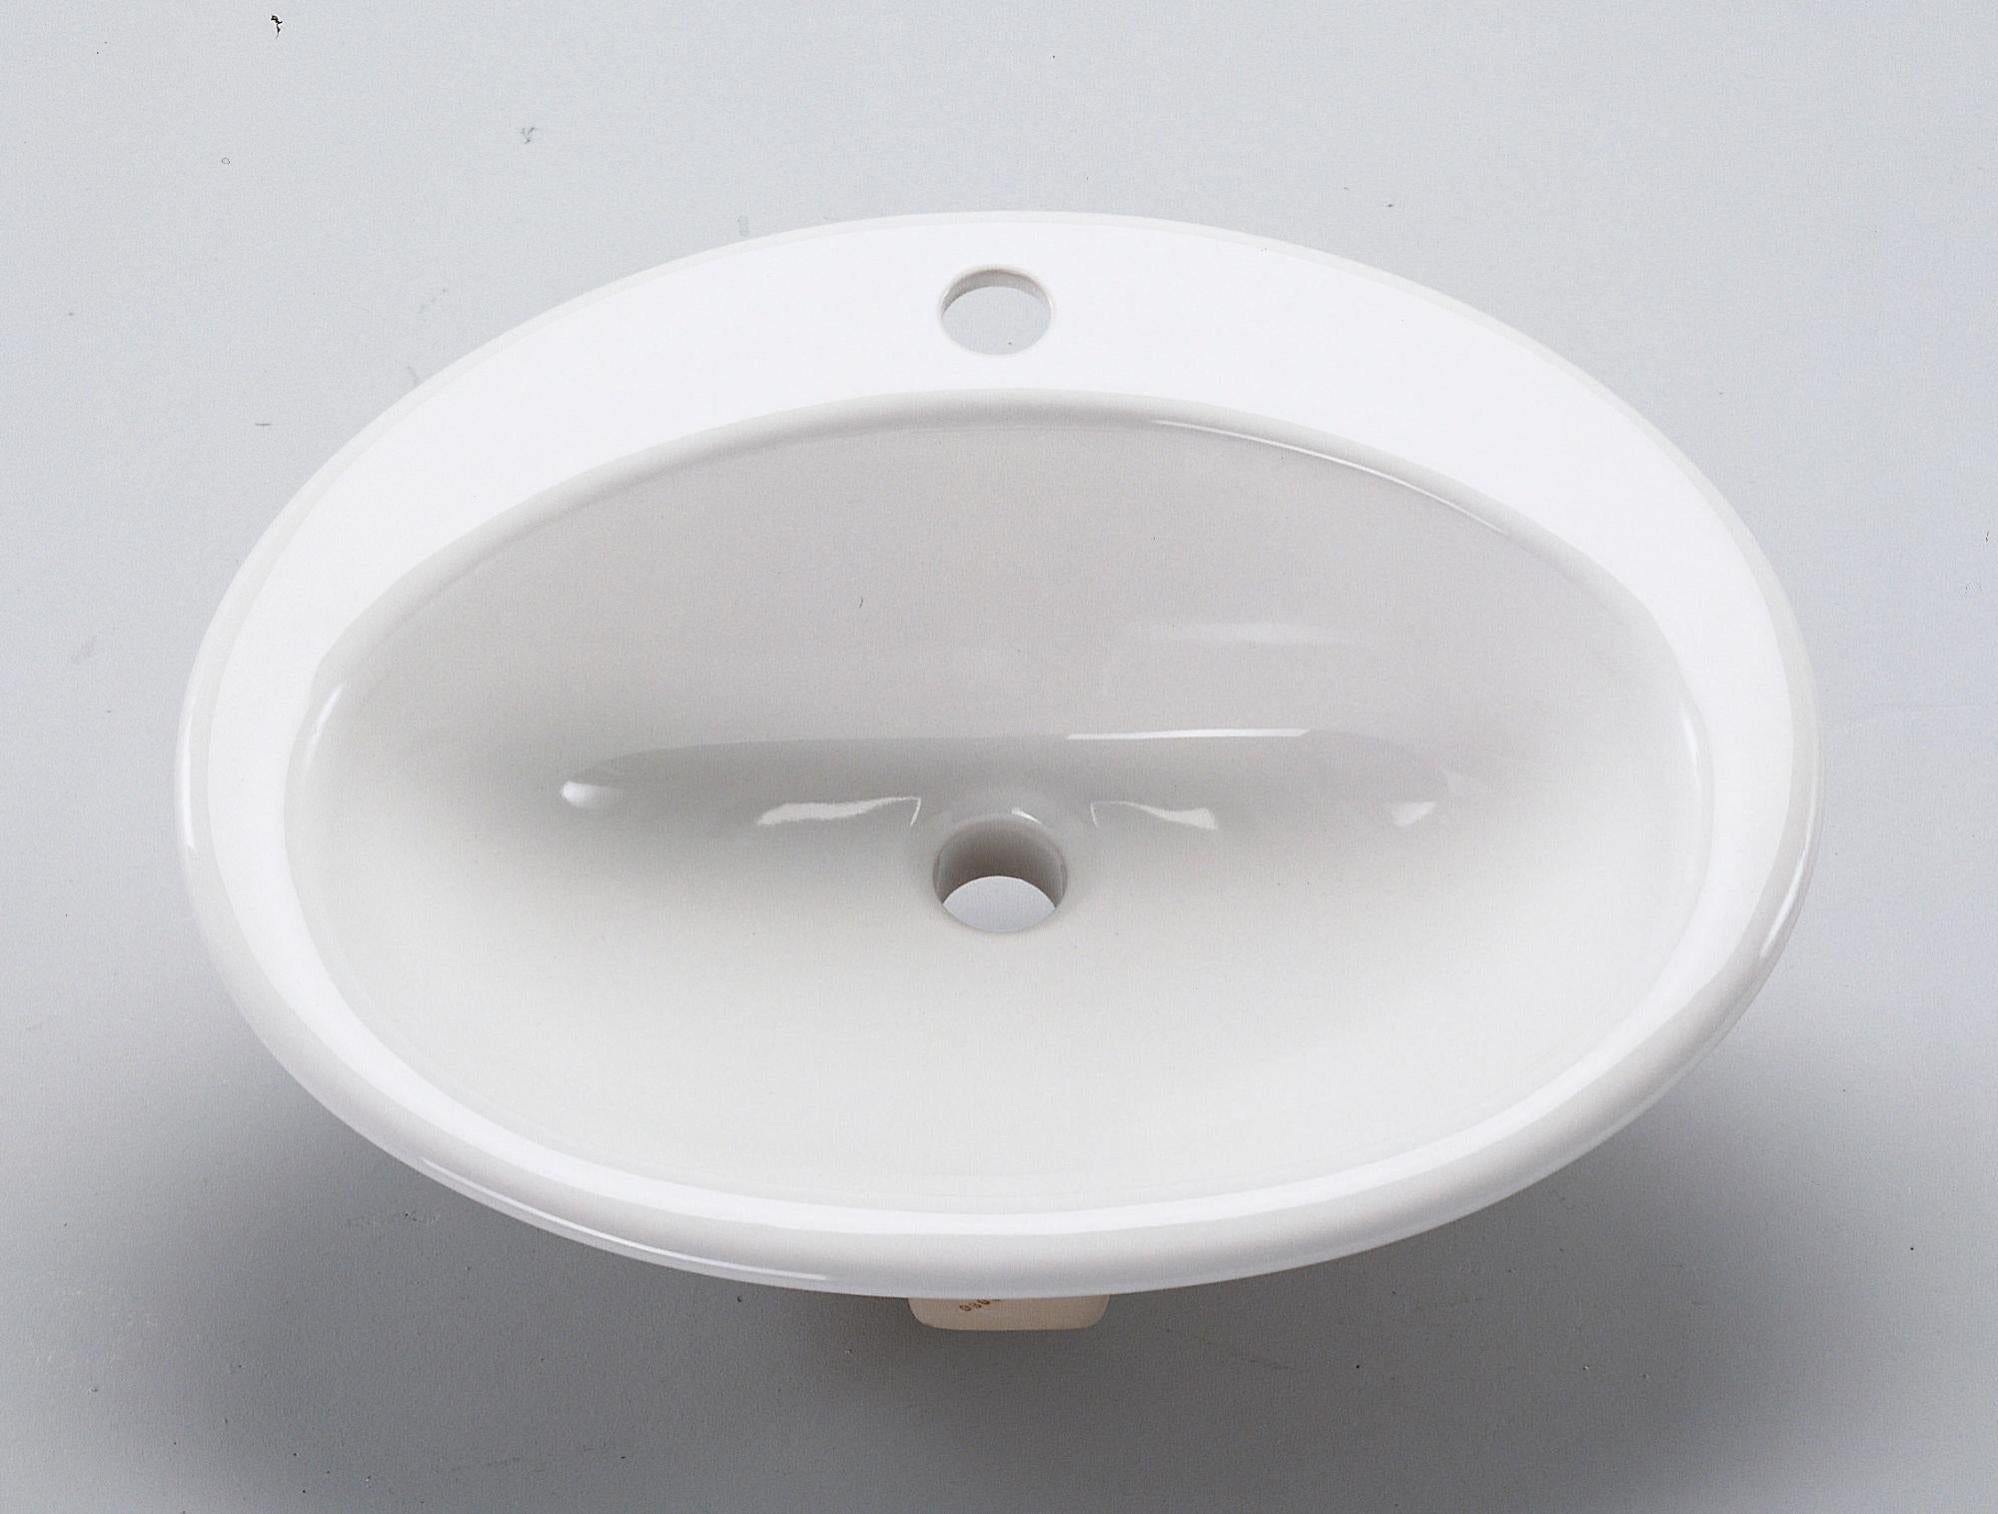 Festnight Luxueuse Vasque en Céramique Ovale Équipé d’Un Débordement Blanc